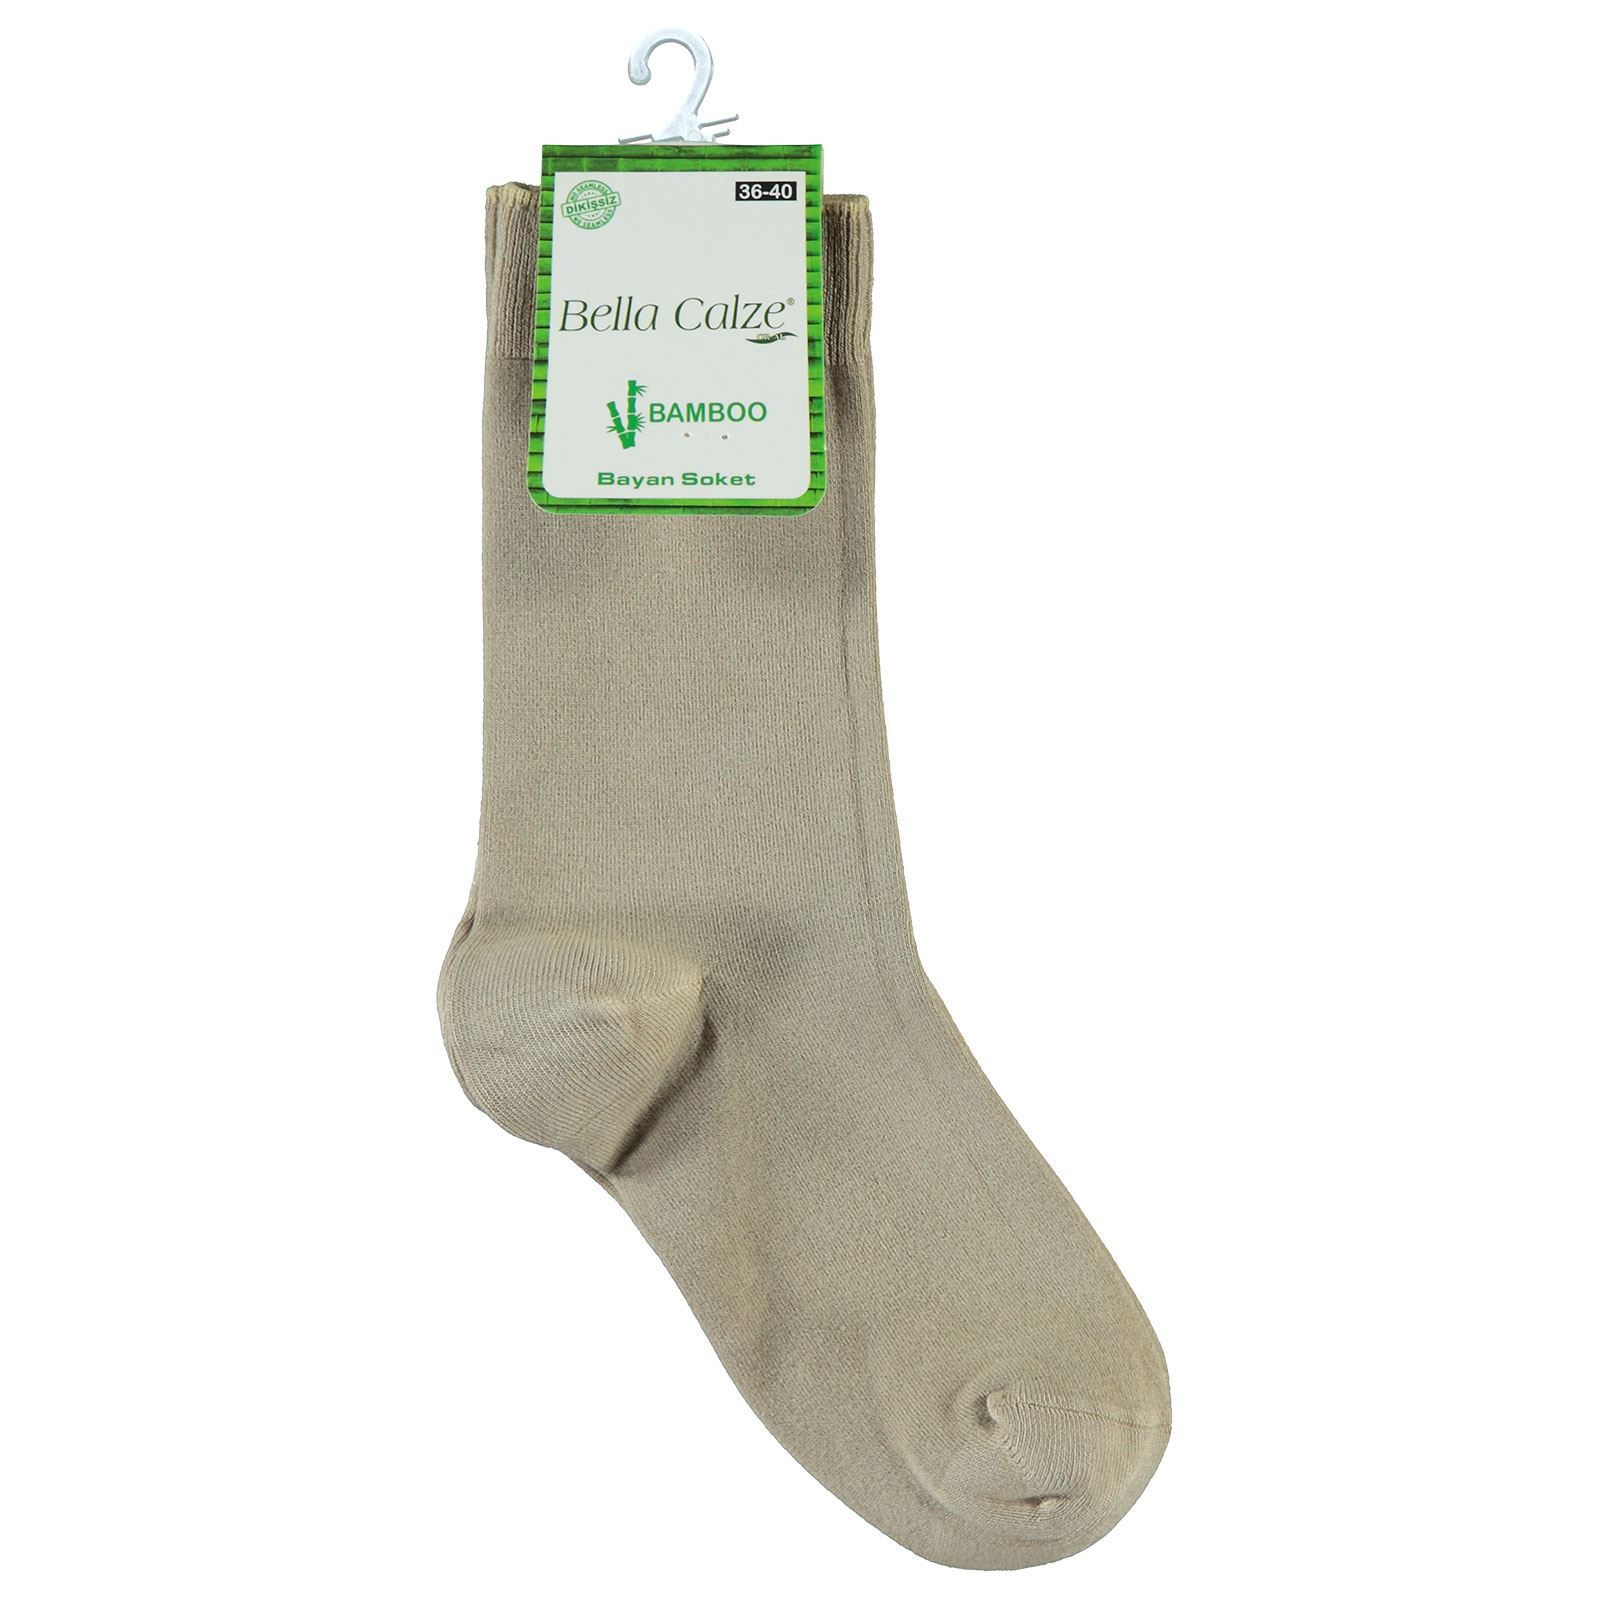 Bella Calze Kız Çocuk Bambu Soket Çorap 36-40 Numara Bej